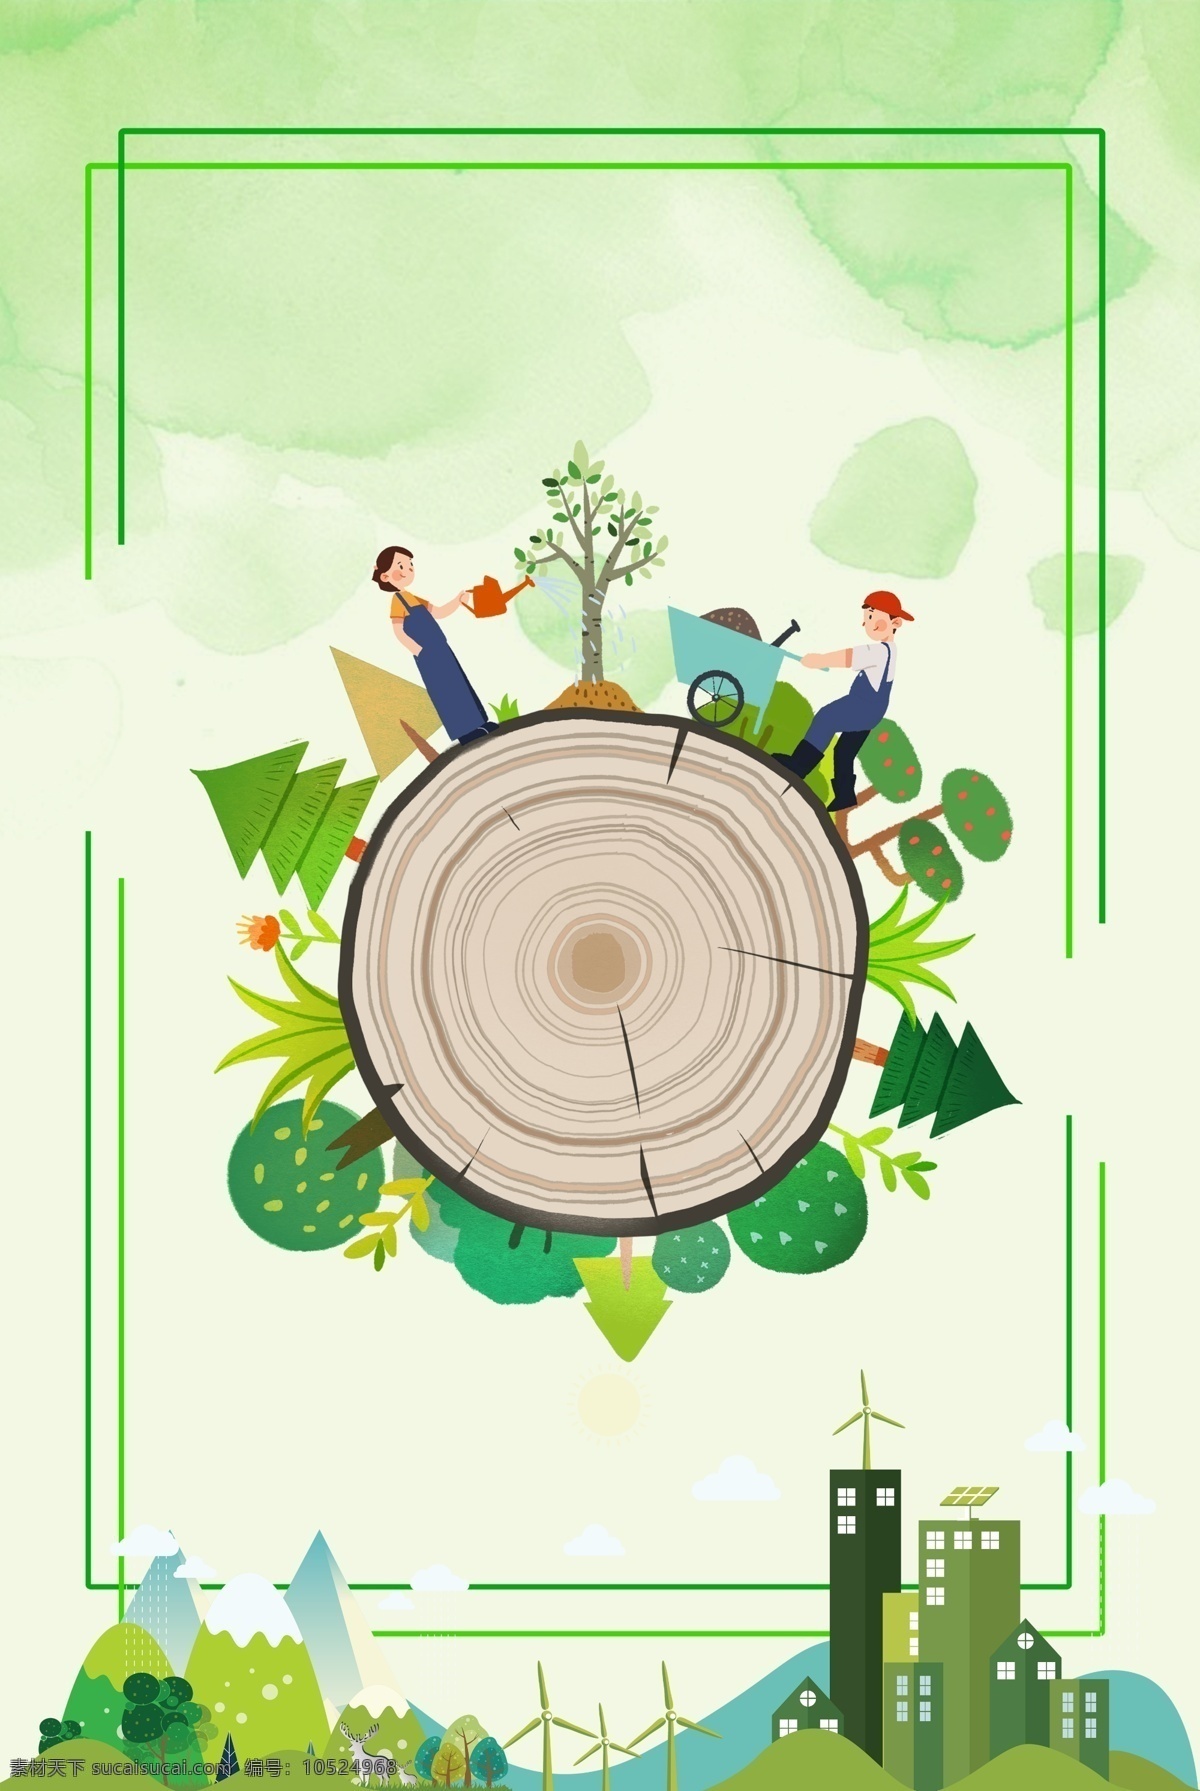 世界环境日 海报 环境日 保护环境 公益 环保 绿色 地球 节能 减排